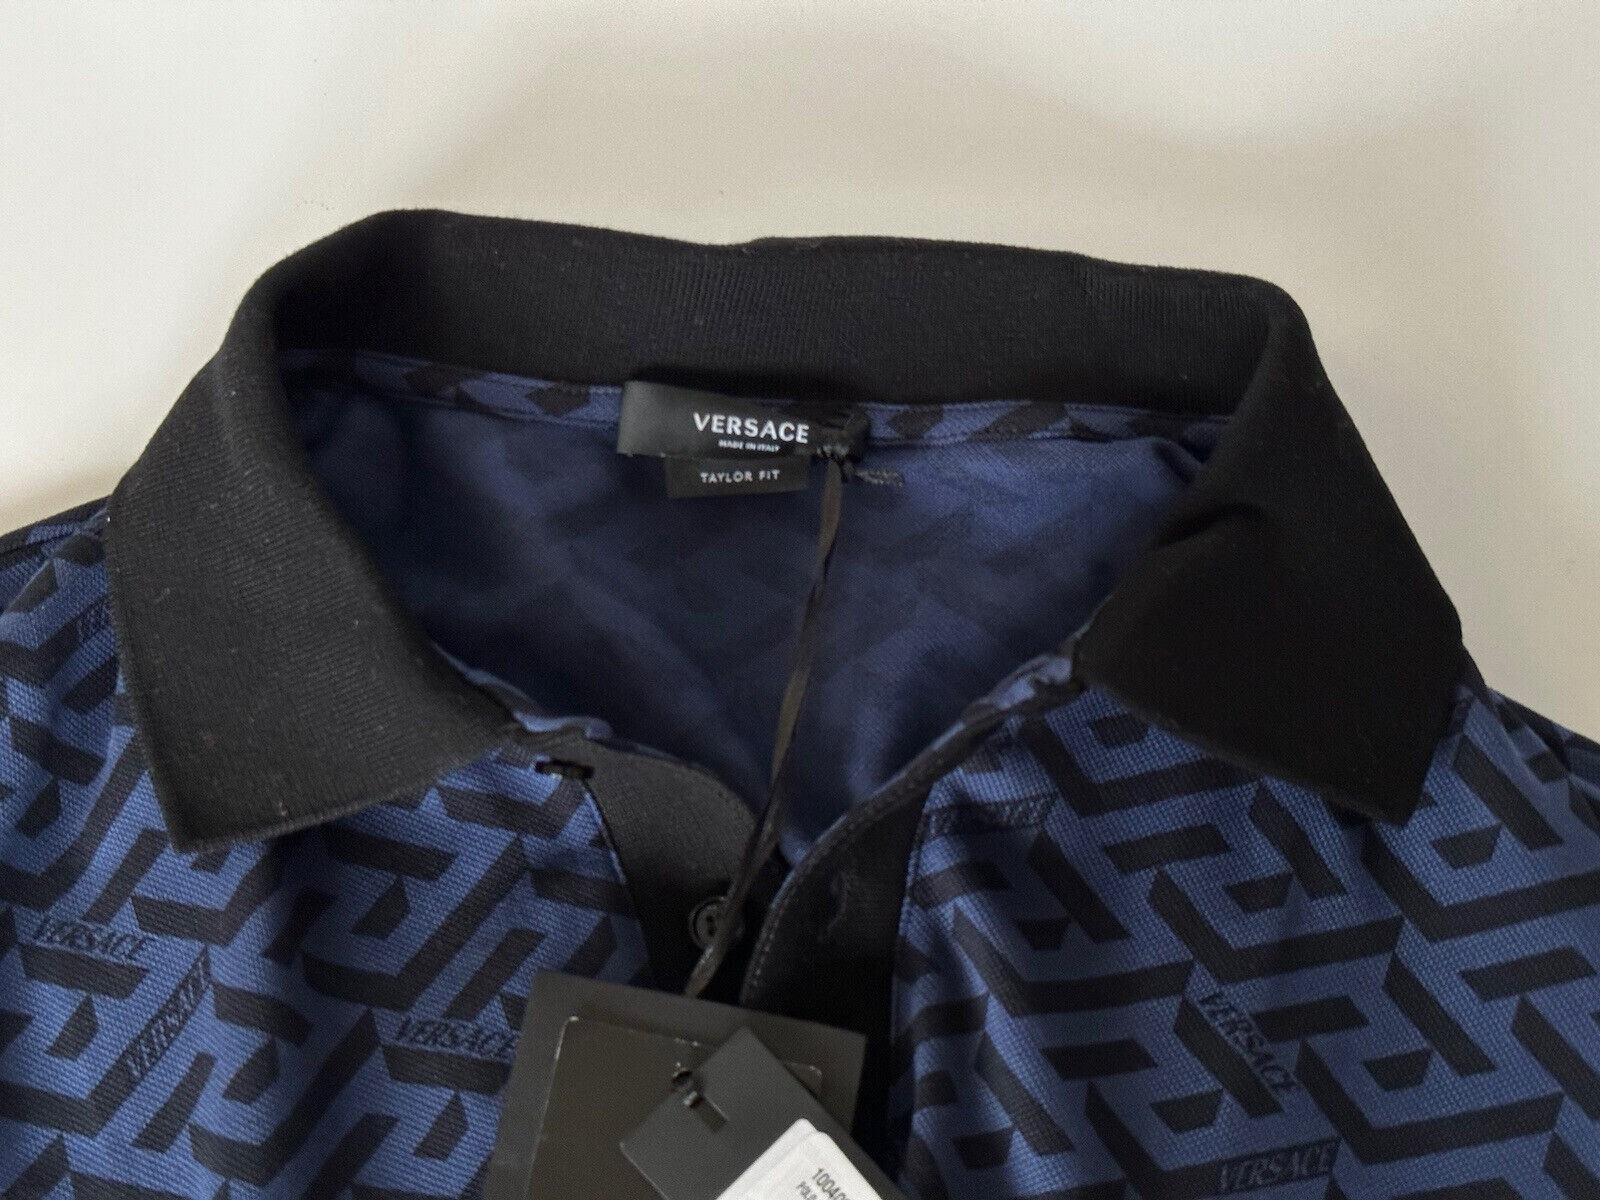 NWT $775 Versace Piquet Greca Signature Синяя/Черная рубашка-поло 2XL 1004083 Италия